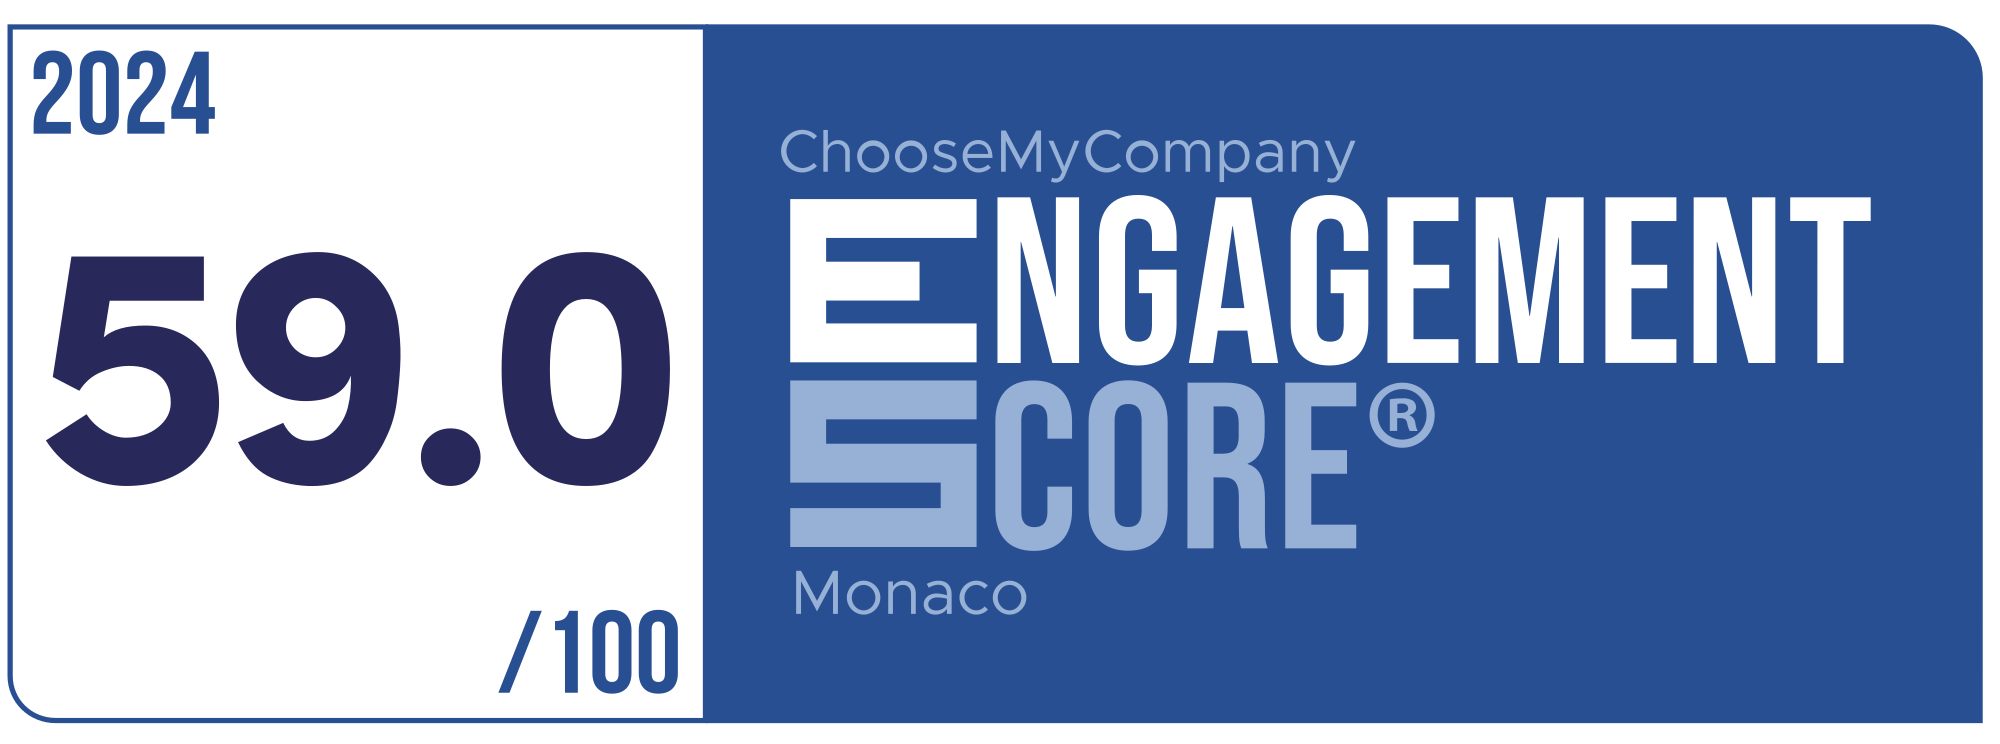 Label Engagement Score 2024 Monaco